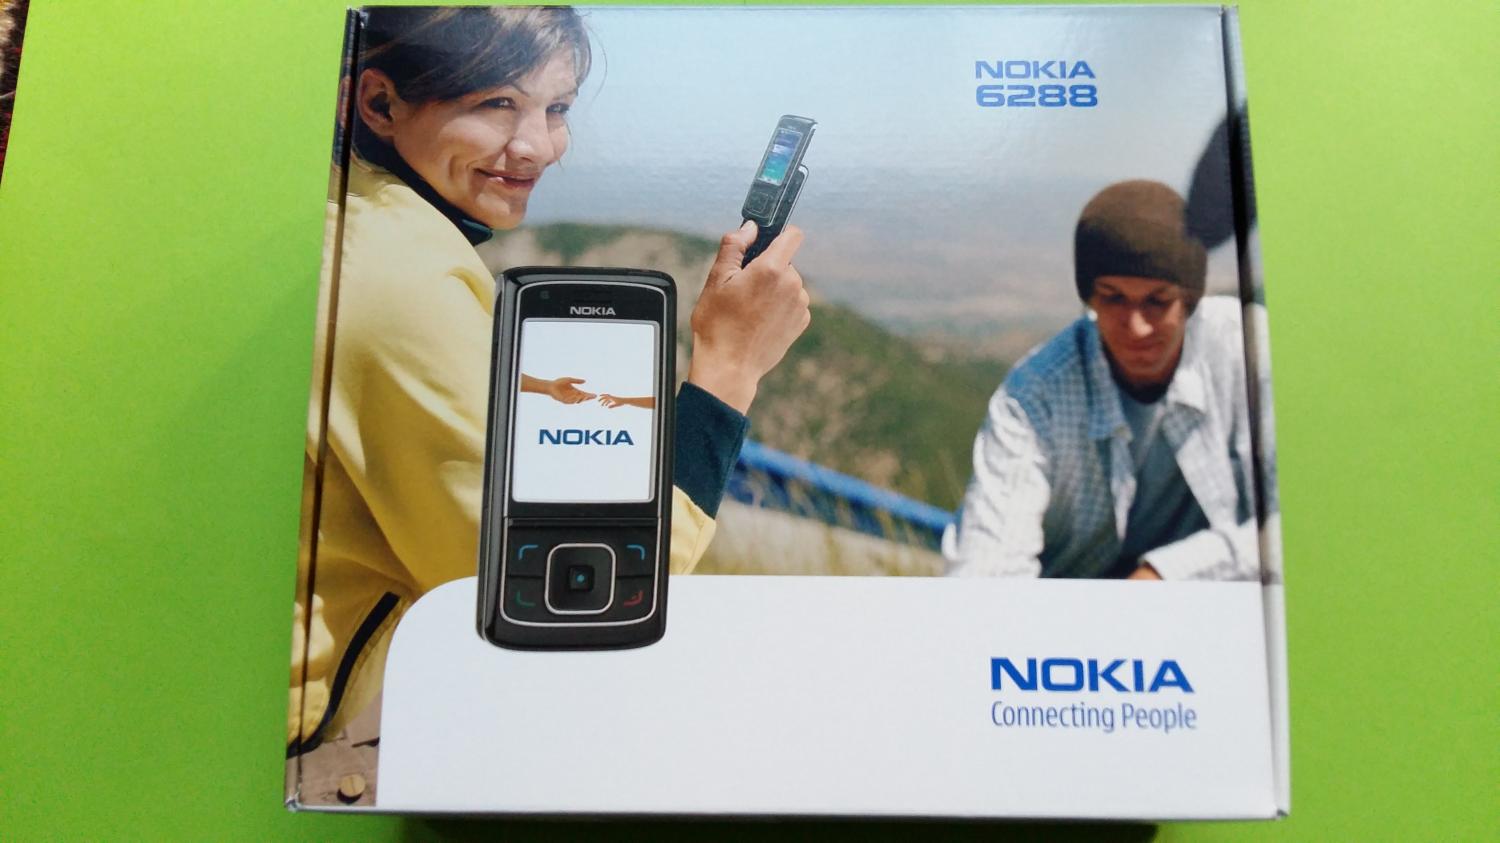 image-7339986-Nokia 6288 (1)6.jpg